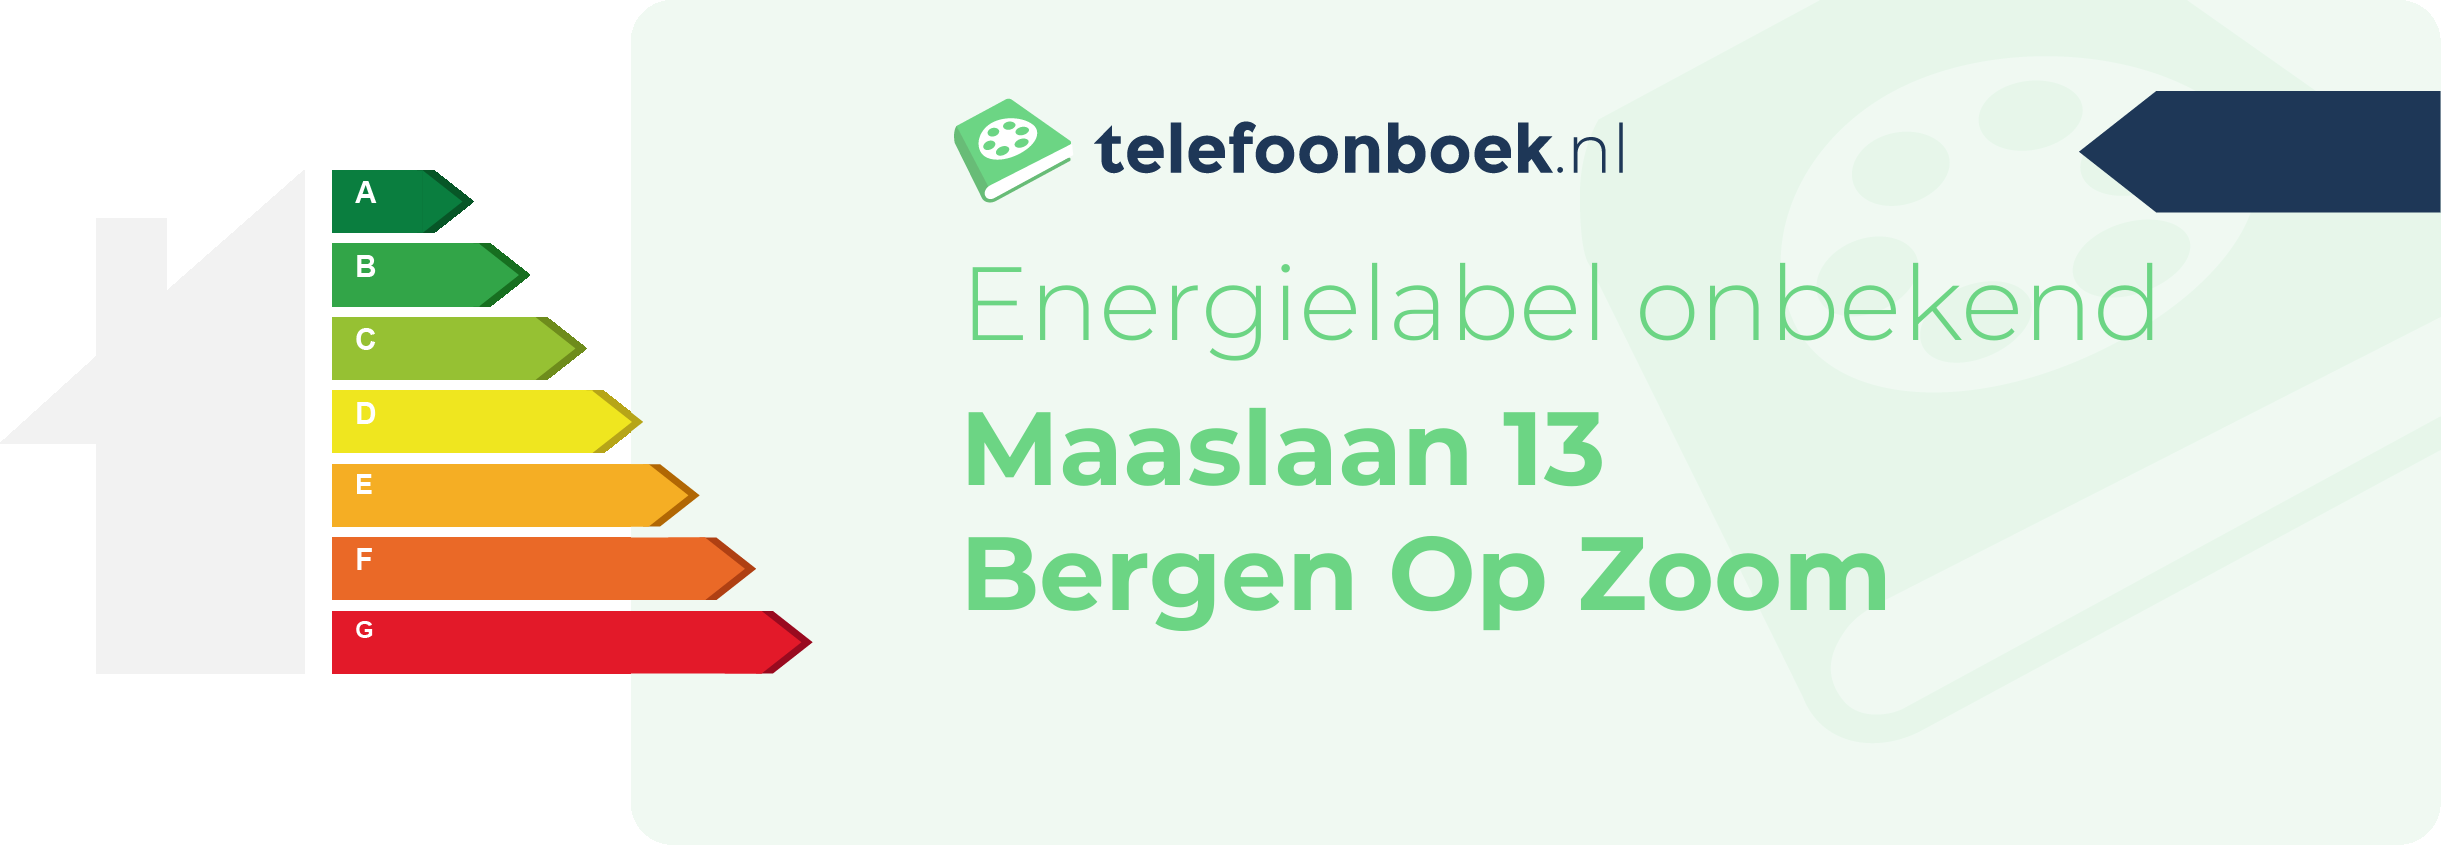 Energielabel Maaslaan 13 Bergen Op Zoom